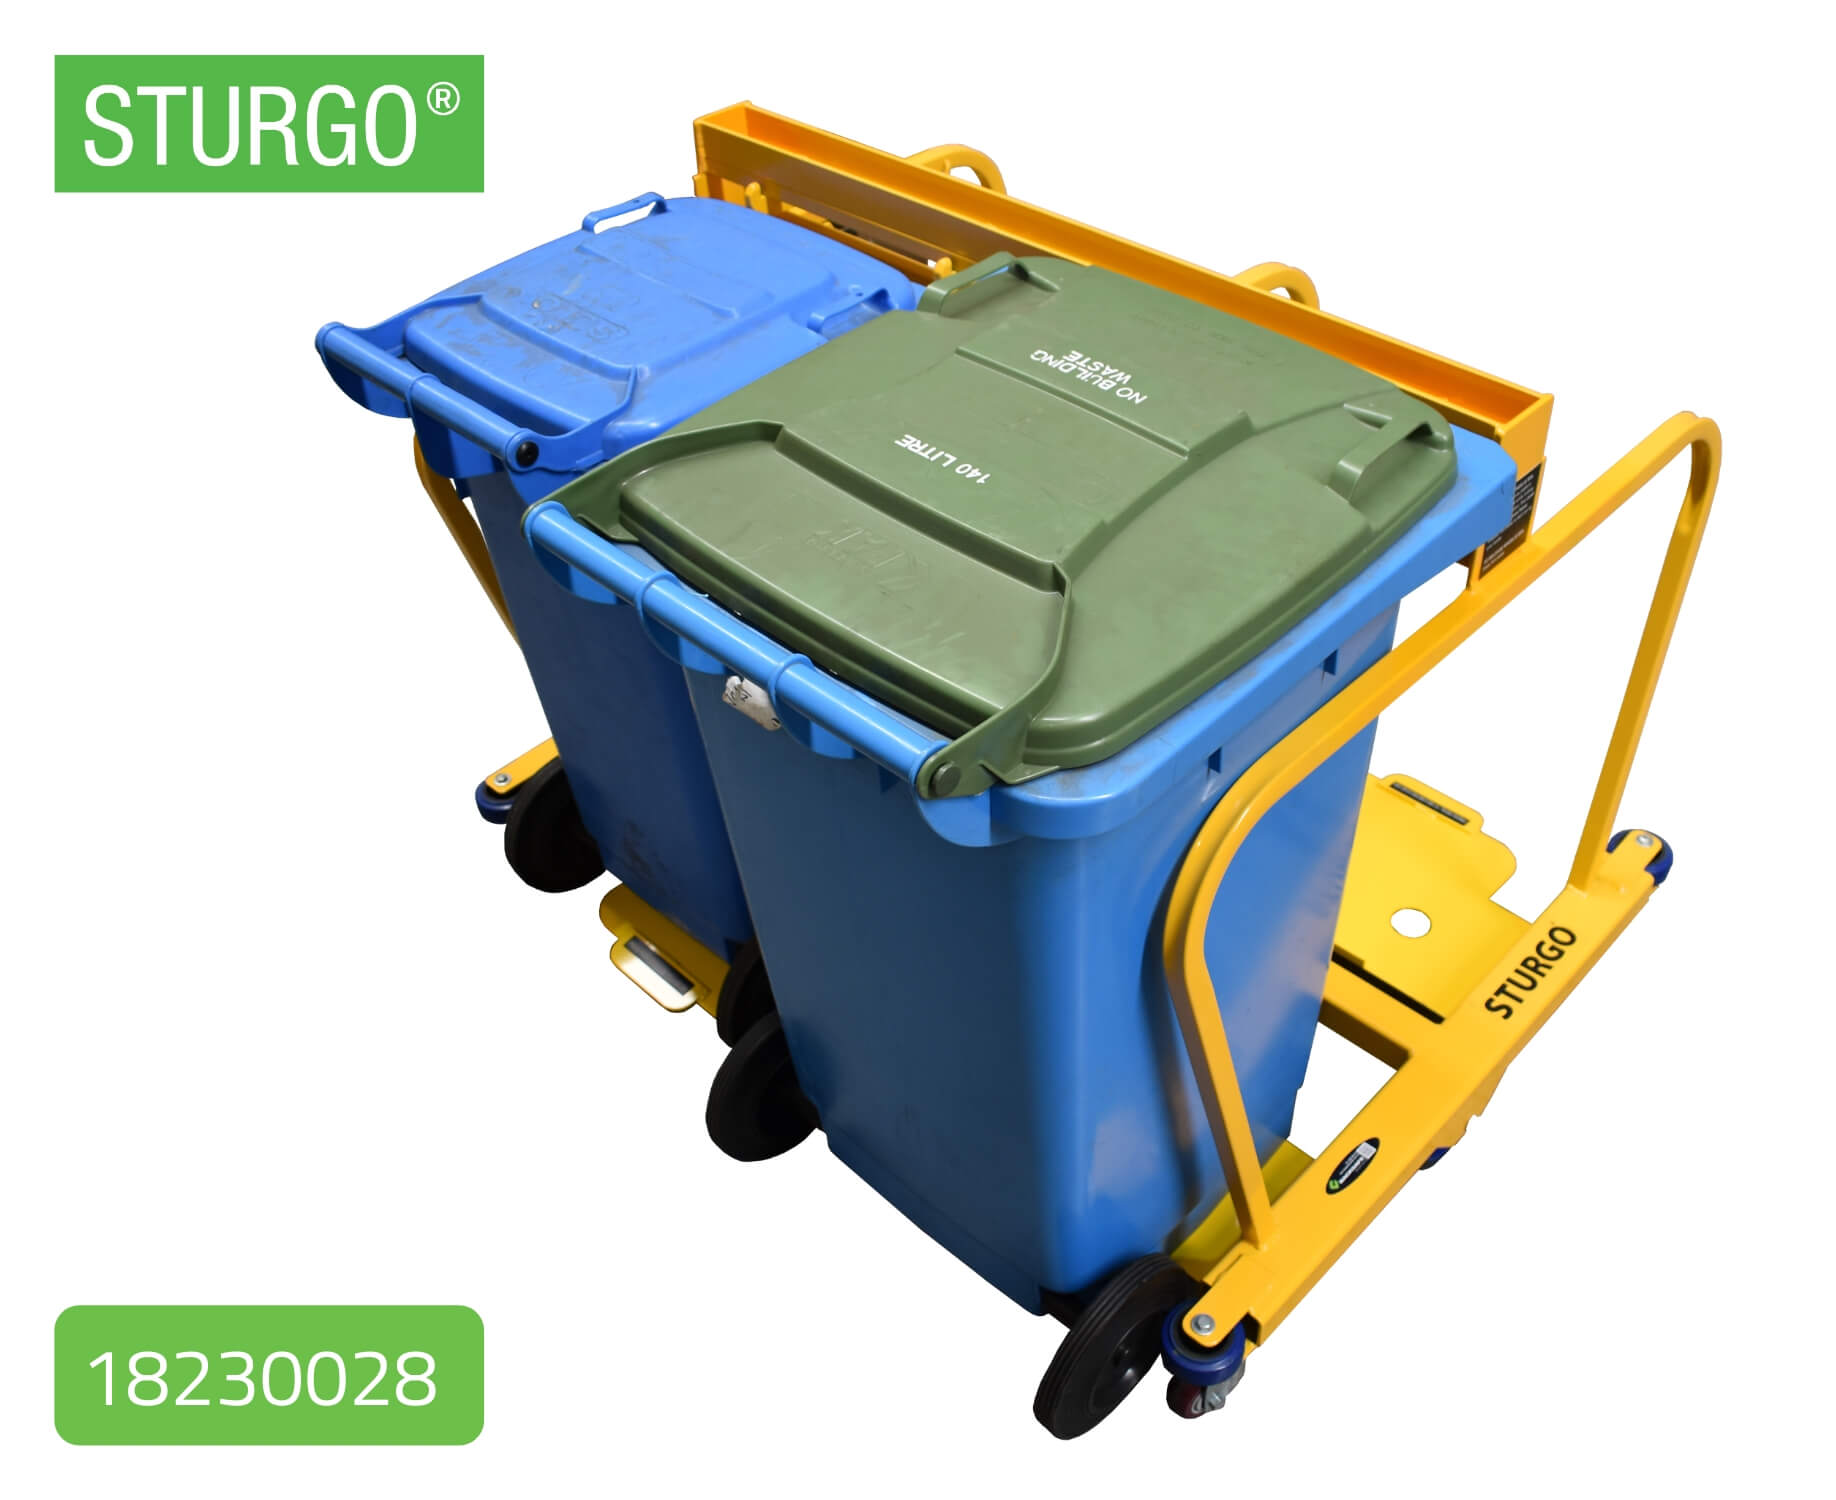 Custom STURGO® Wheelie Bin Trolley 14080